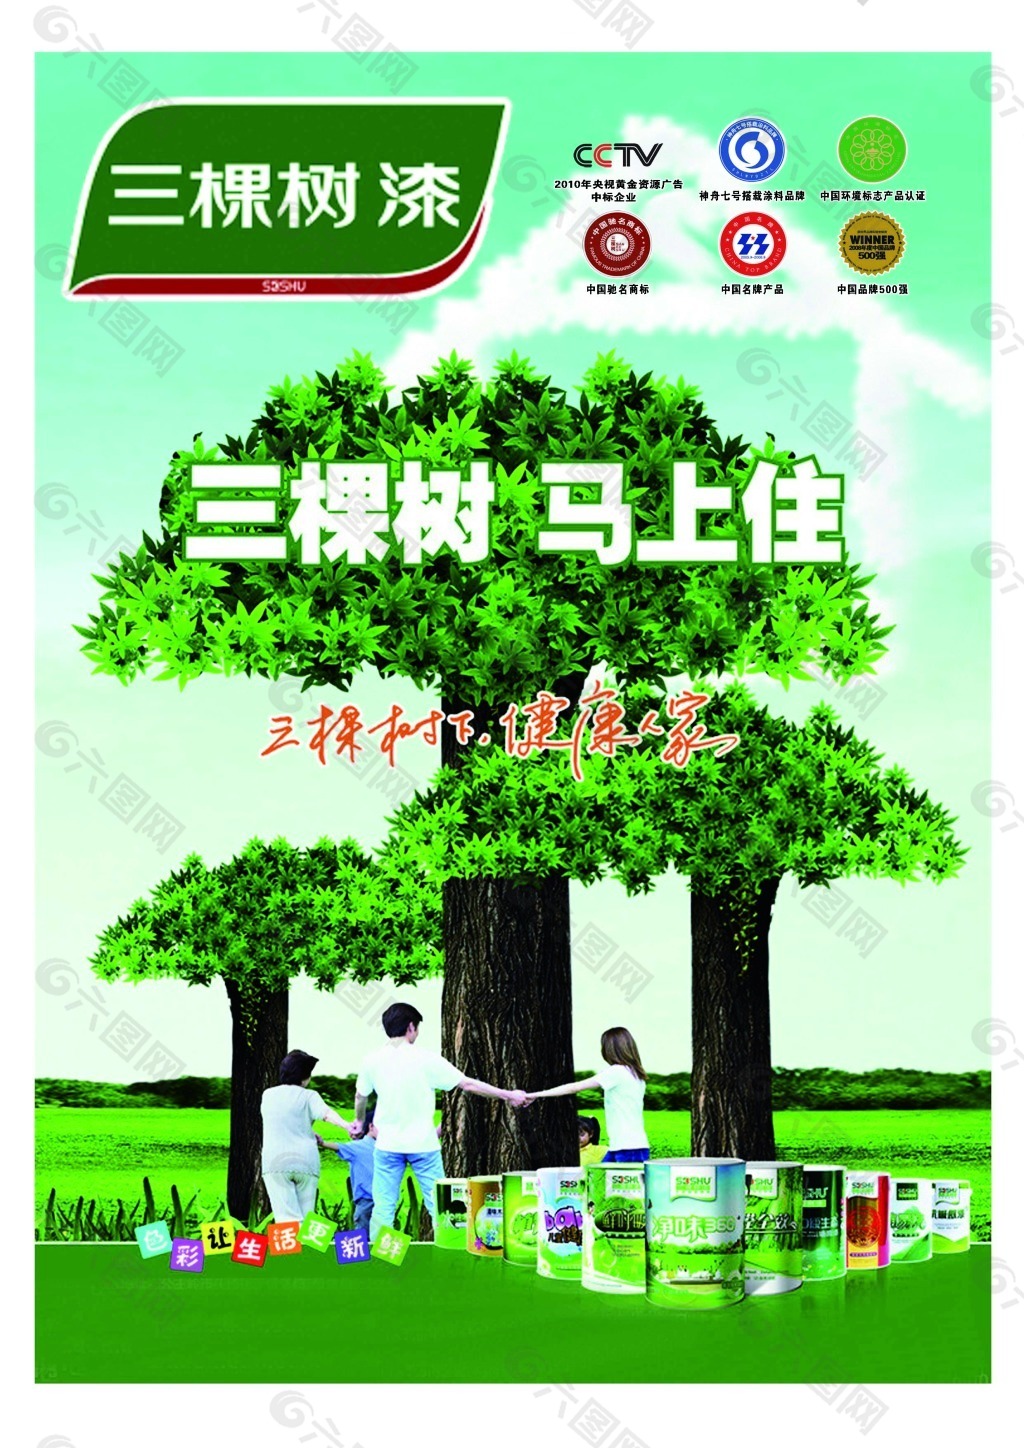 三棵树油漆环保宣传